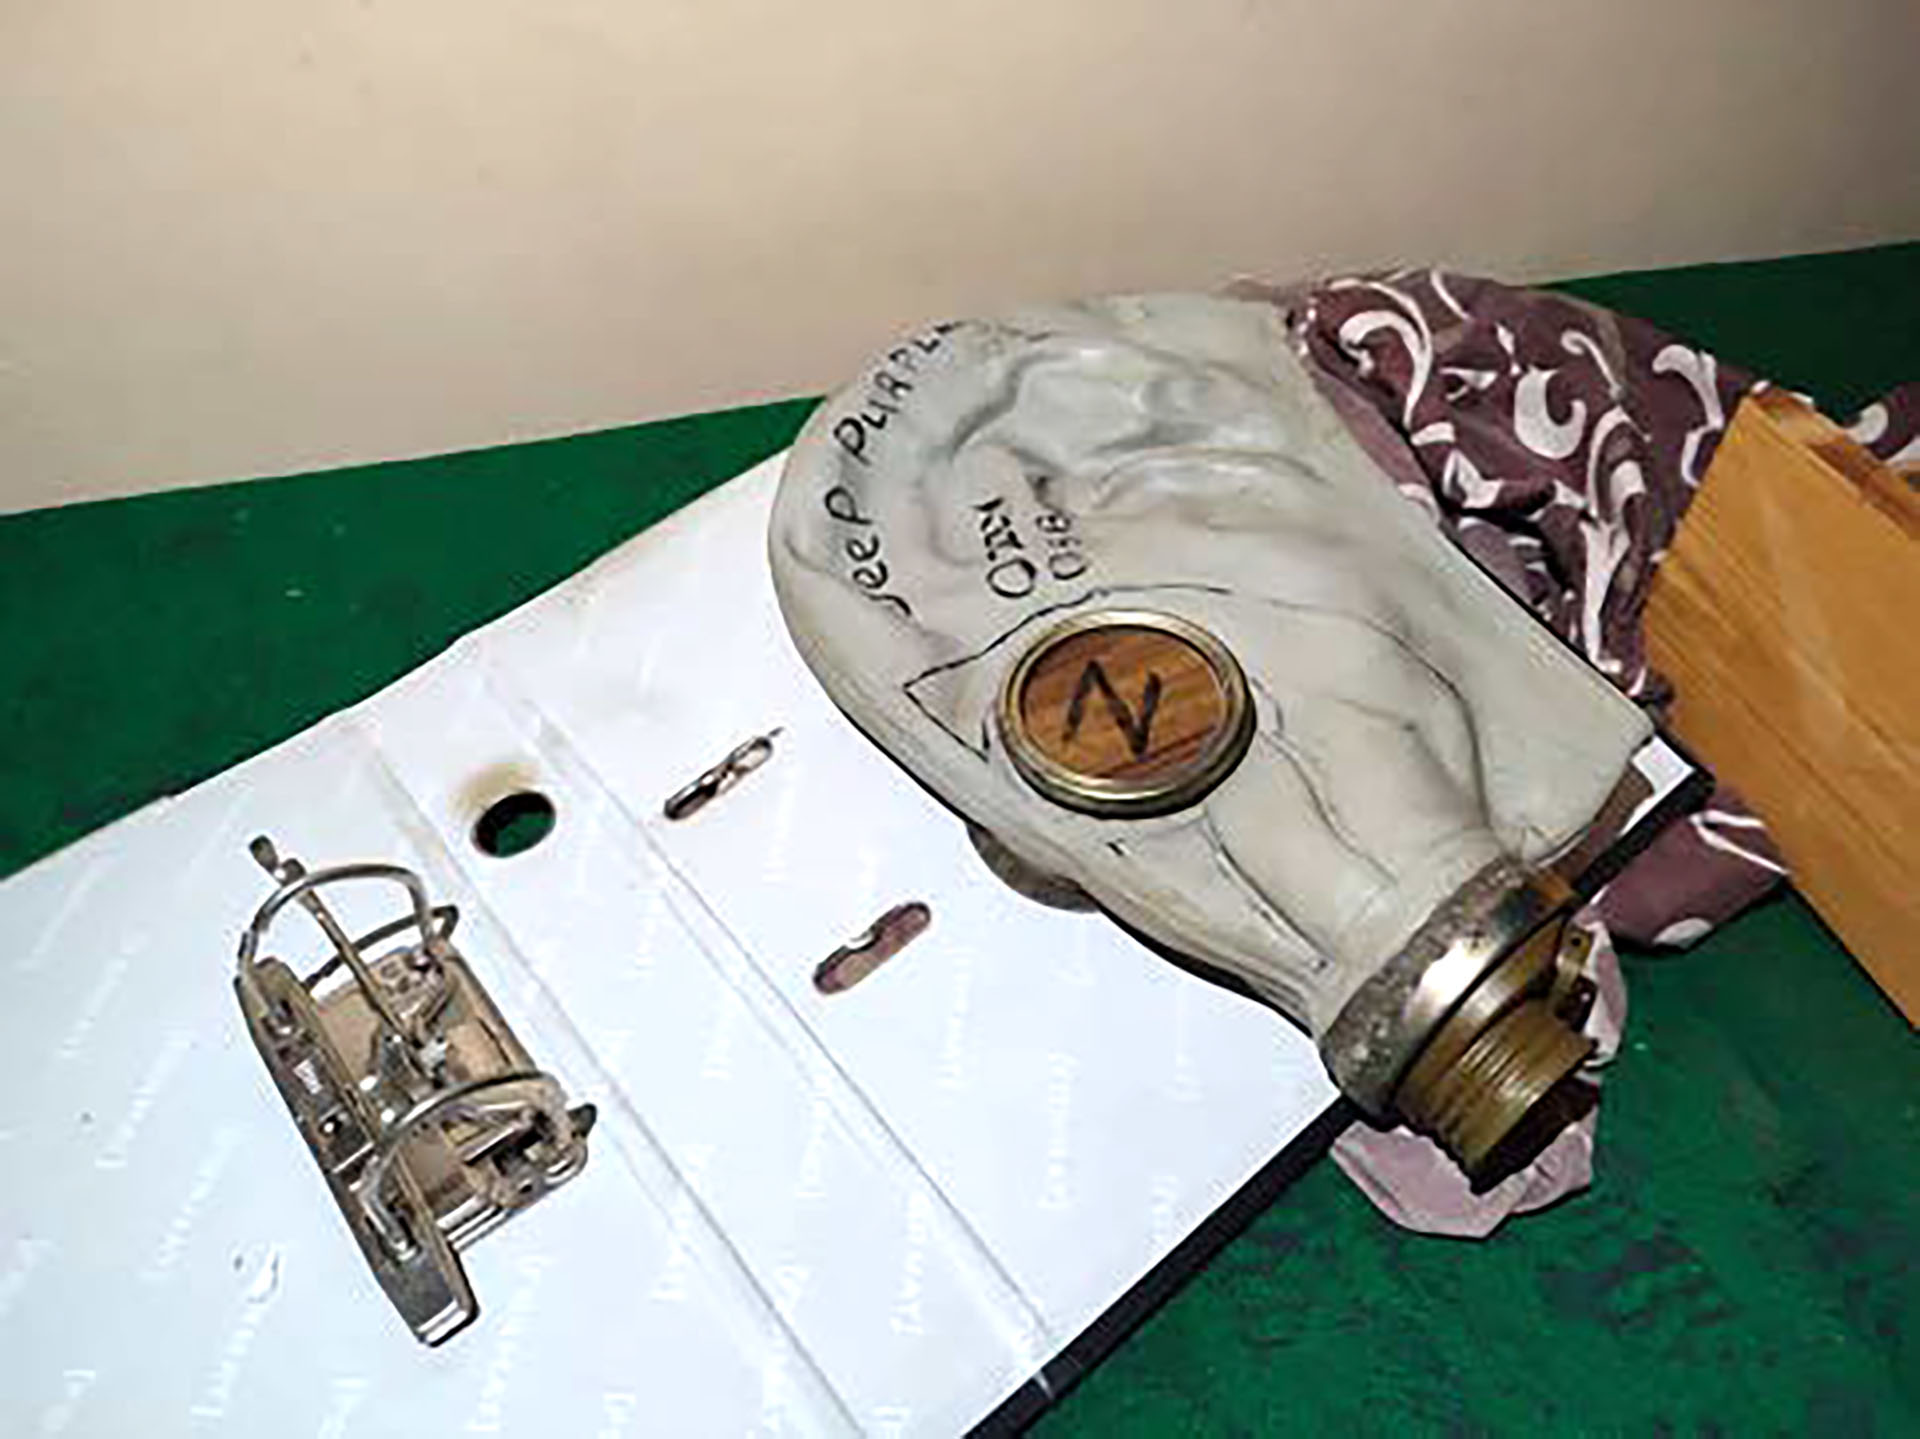 Máscara antigás utilizada para torturar a civiles en Kupiansk, región de Kharkiv. La letra "Z" es utilizada por los rusos como símbolo de la guerra de Rusia contra Ucrania. Foto de Dumka.media